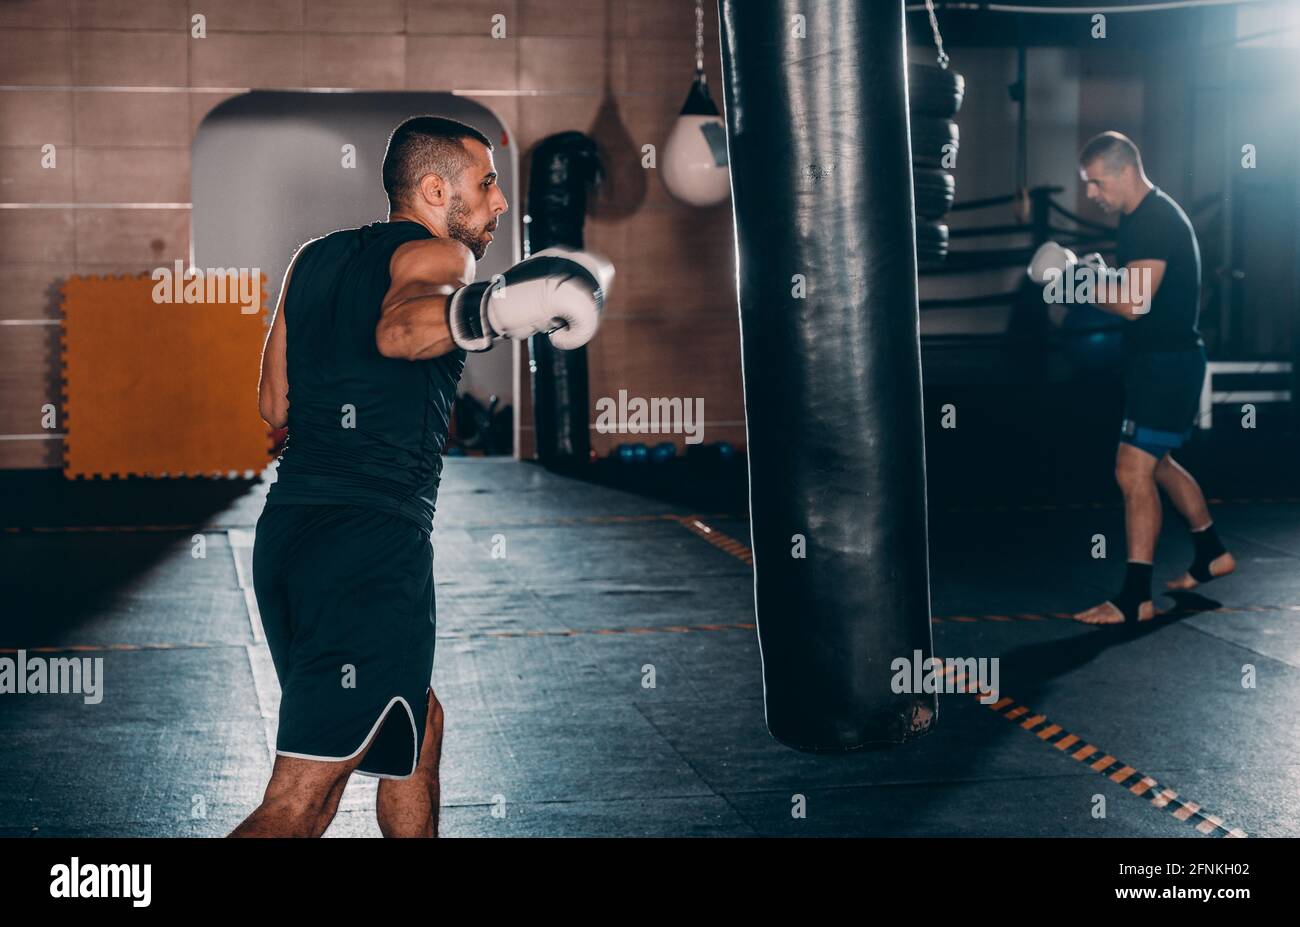 Homme sportif avec un sac de boxe gants de boxe à la salle de sport.  Concept a propos de sport, fitness, arts martiaux Photo Stock - Alamy